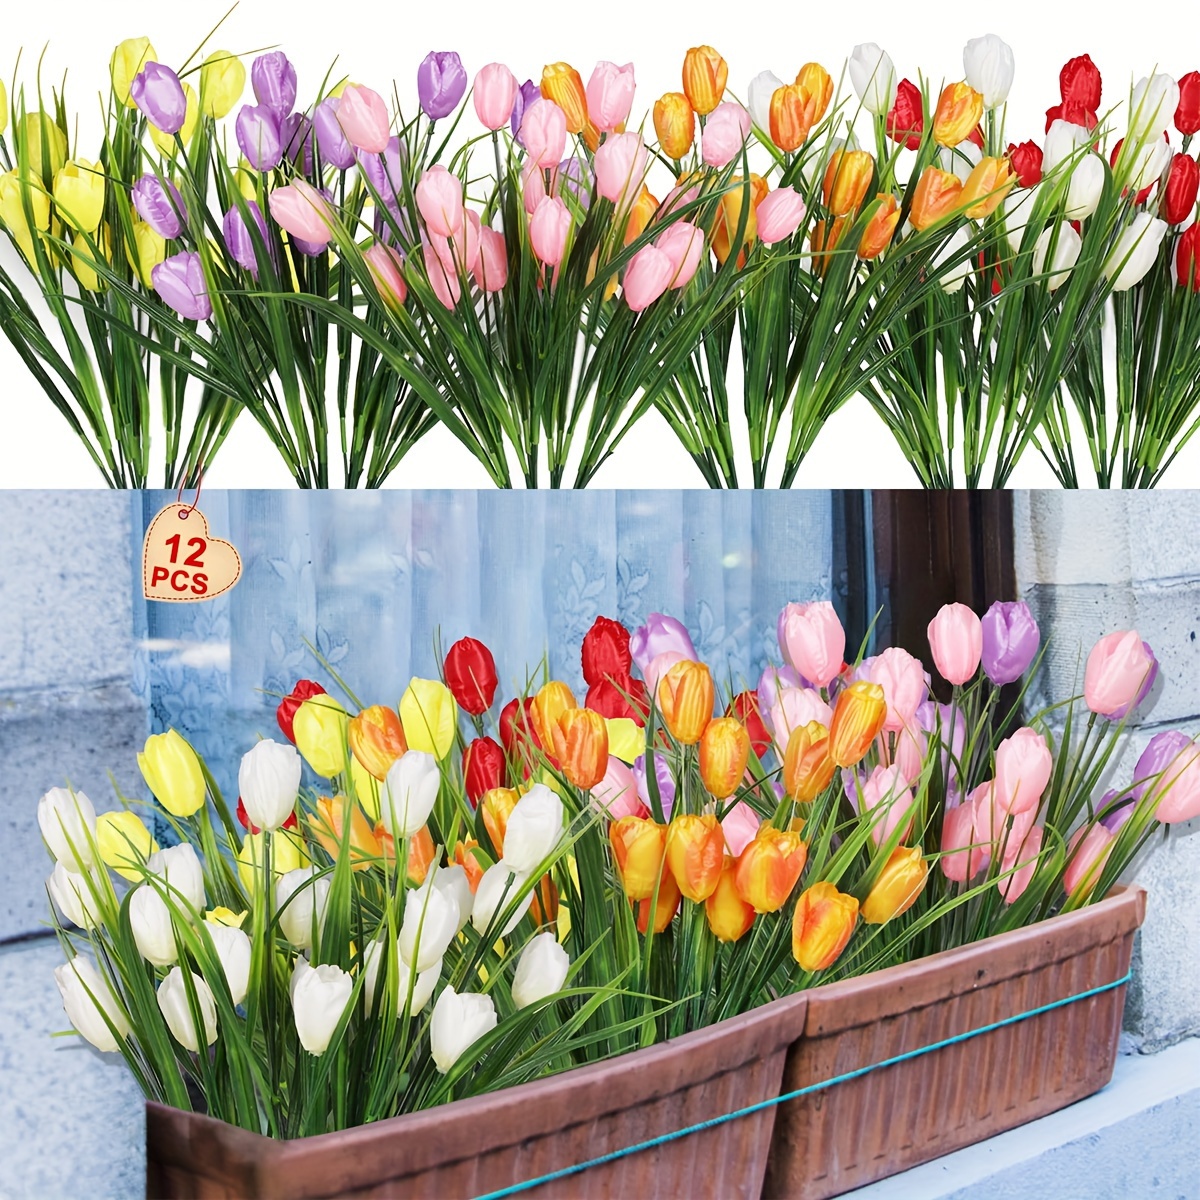 

12 Bundles De Tulipes Artificielles Tulipes Extérieures Fleurs Faux Tulipes Mélangées Couleurs Fleurs Réelles Plantes Verdure Pour Maison Fenêtre Porche Jardin Ferme Grange Décor